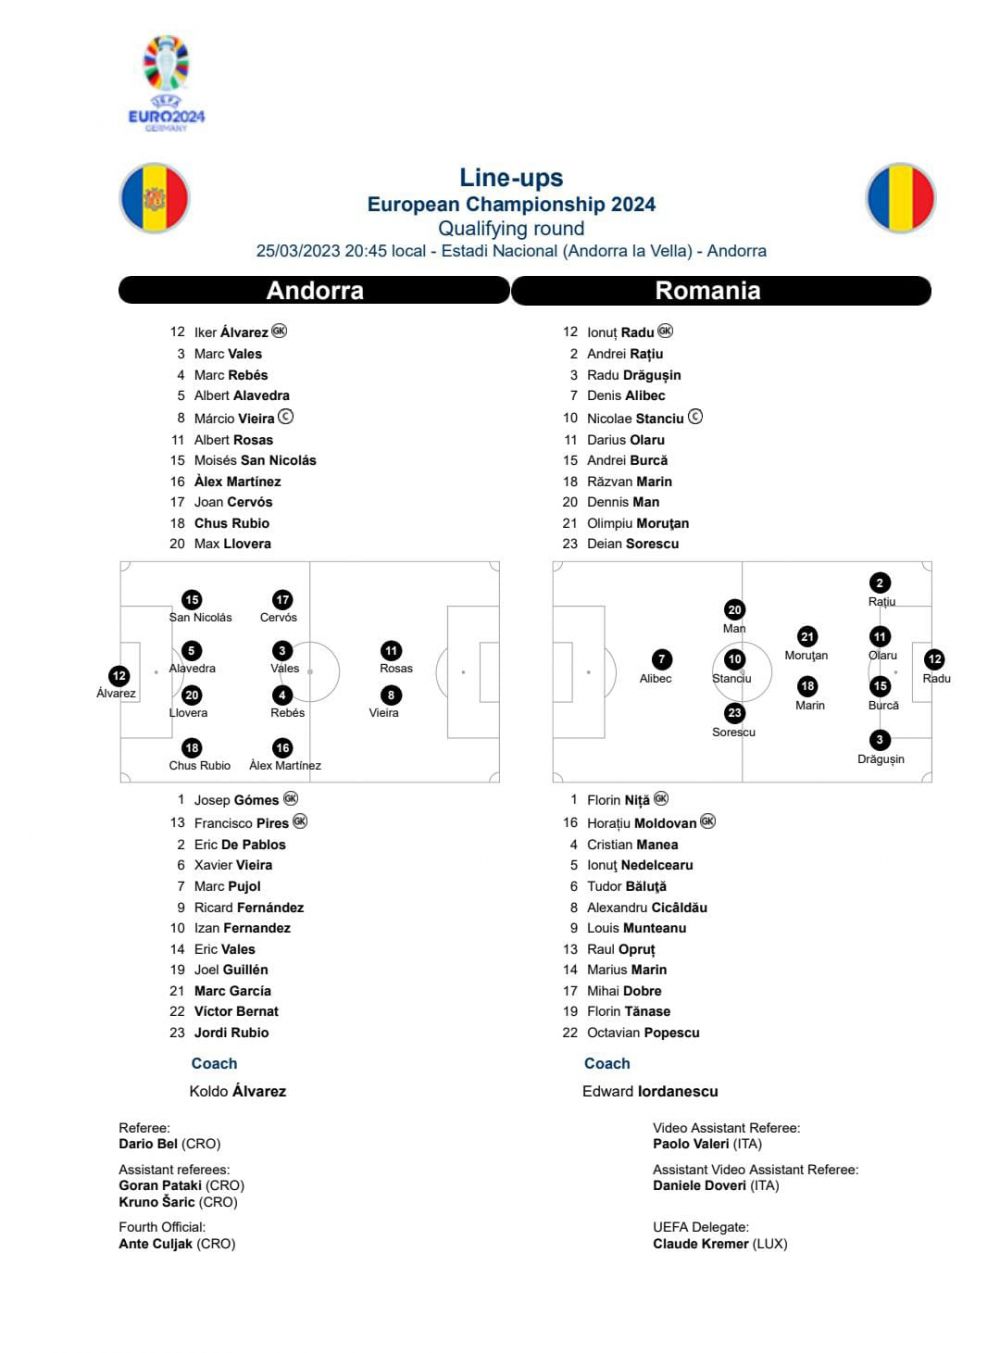 Darius Olaru, 'soluția' lui Gigi Becali pentru apărarea FCSB?! :) UEFA l-a 'reprofilat' pe fotbalistul roș-albaștrilor pe foaia de joc pentru meciul cu Andorra_1